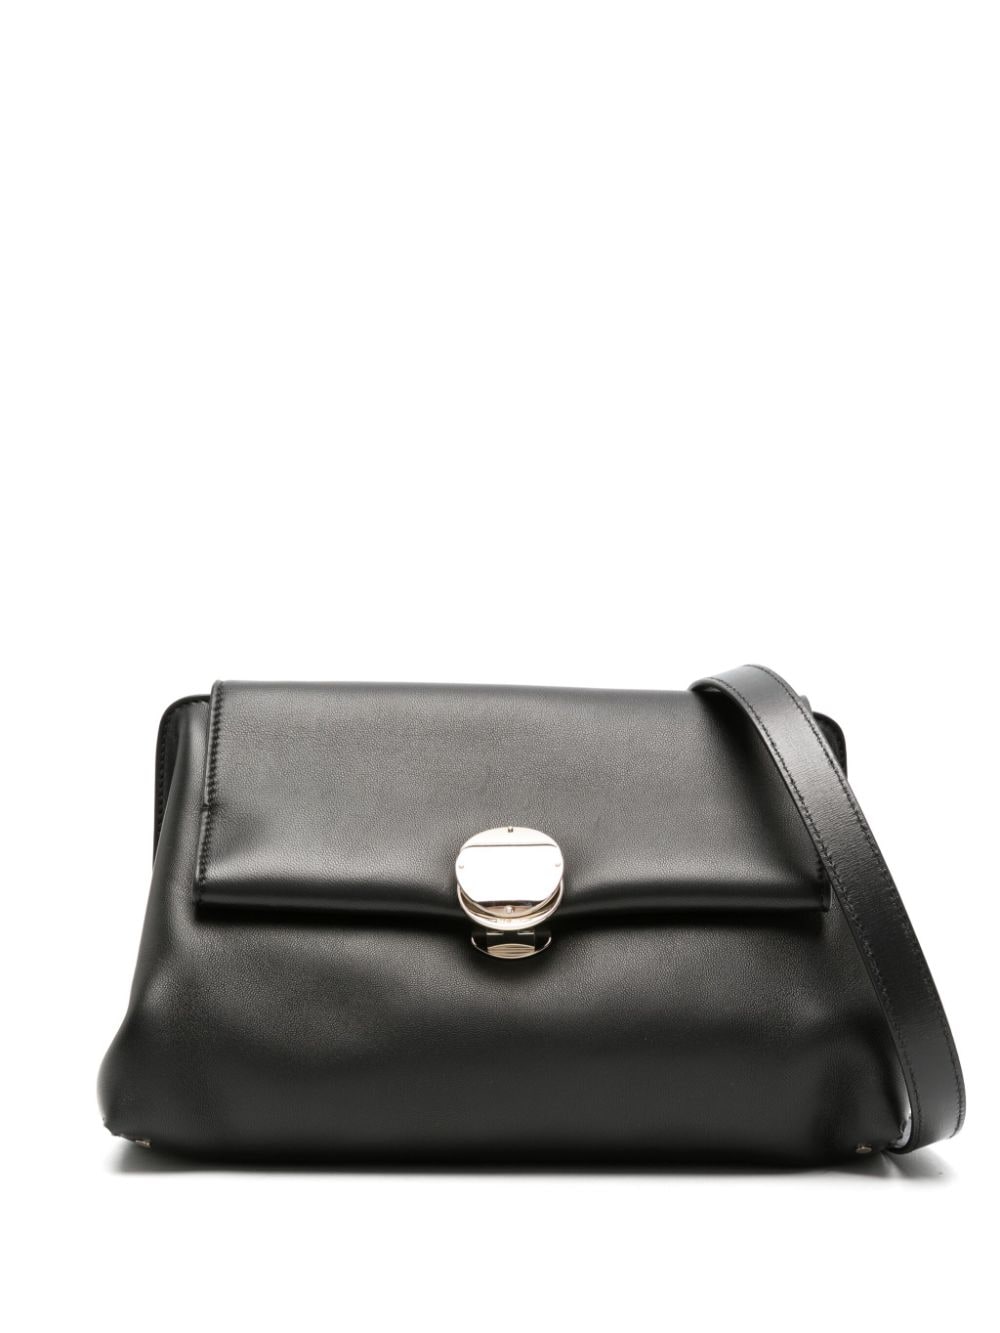 Chloé Penelope Leather Shoulder Bag In Black